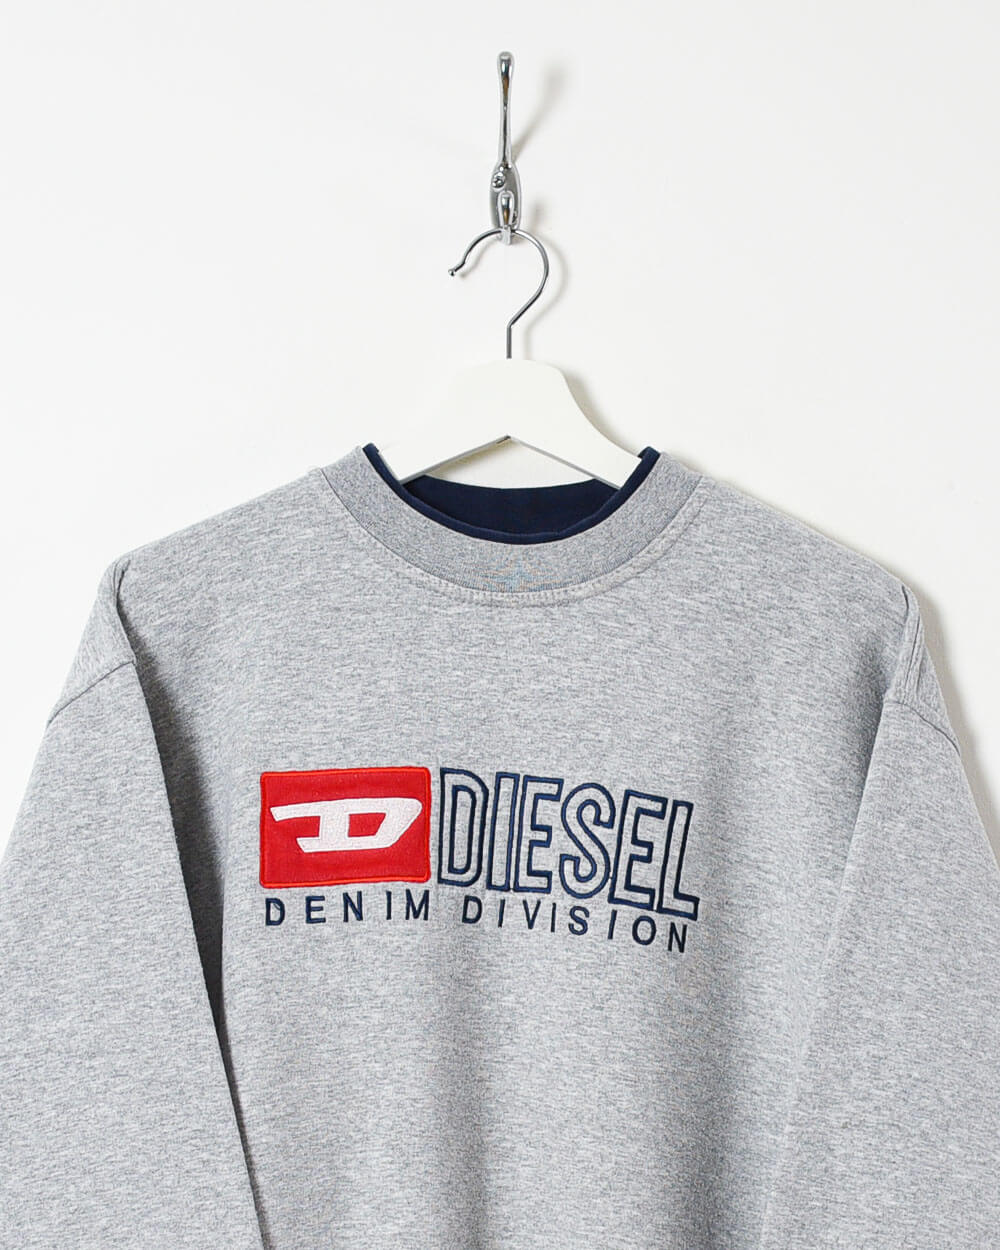 Stone Diesel Denim Division Sweatshirt - Small